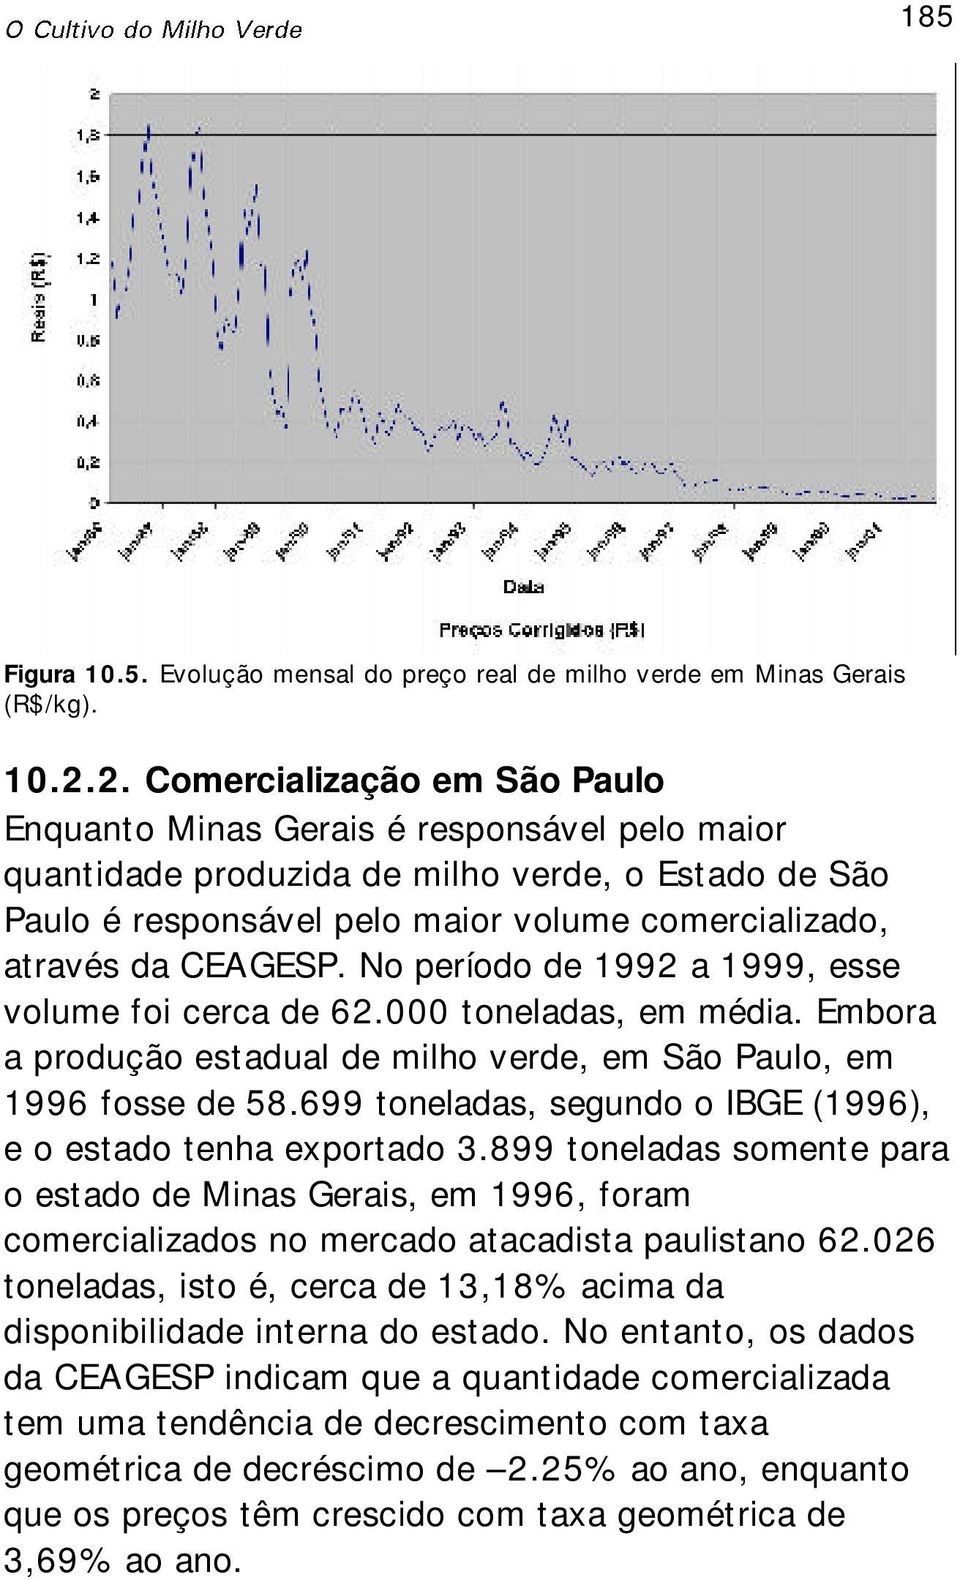 CEAGESP. No período de 1992 a 1999, esse volume foi cerca de 62.000 toneladas, em média. Embora a produção estadual de milho verde, em São Paulo, em 1996 fosse de 58.